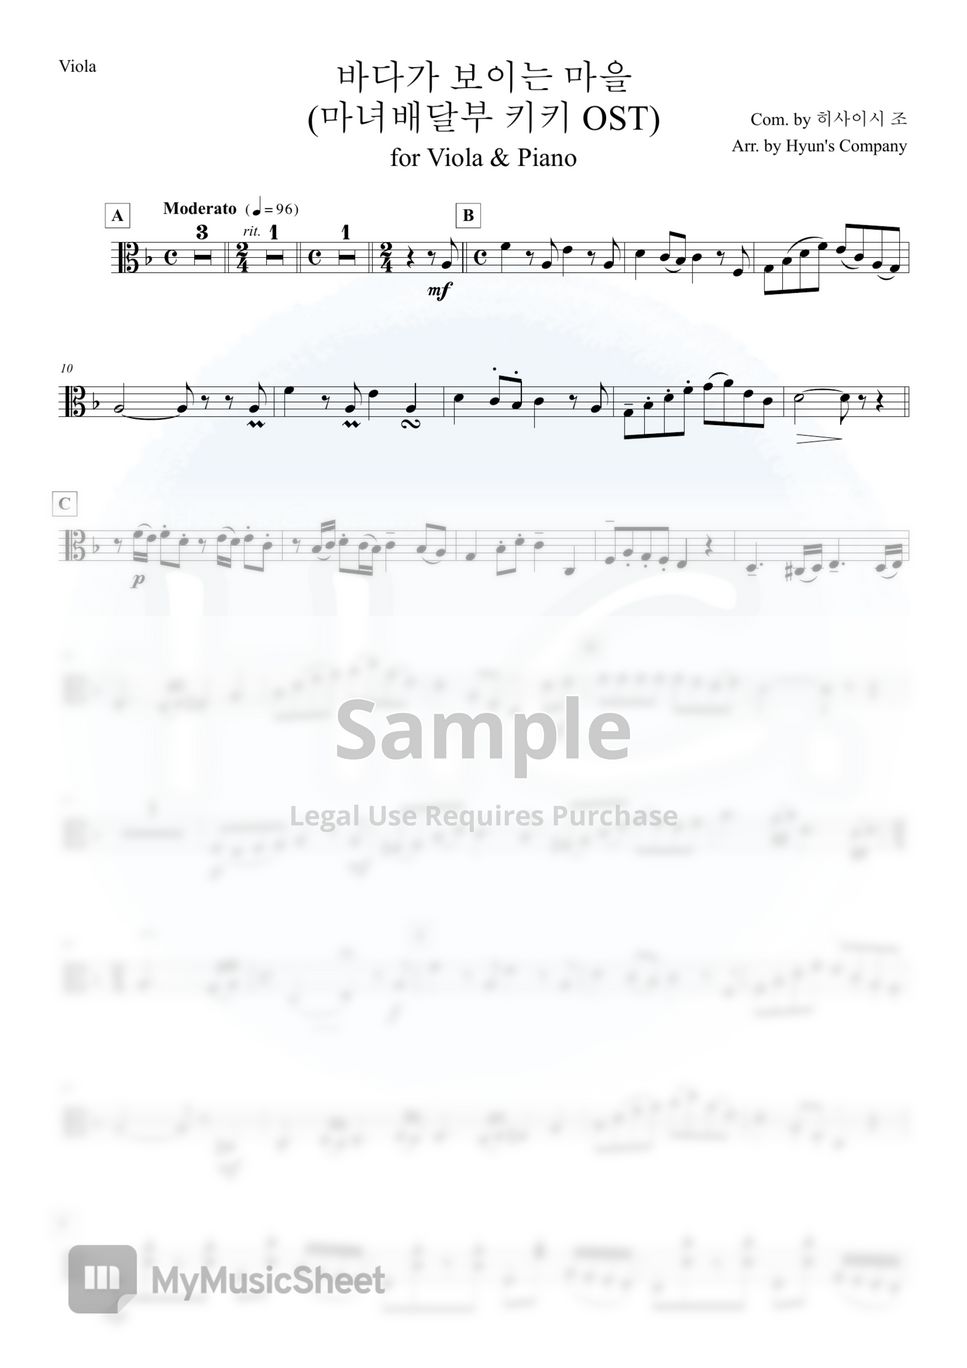 久石譲 - 風の丘 for Viola & Piano (魔女の宅急便 OST) by Hyun's Company